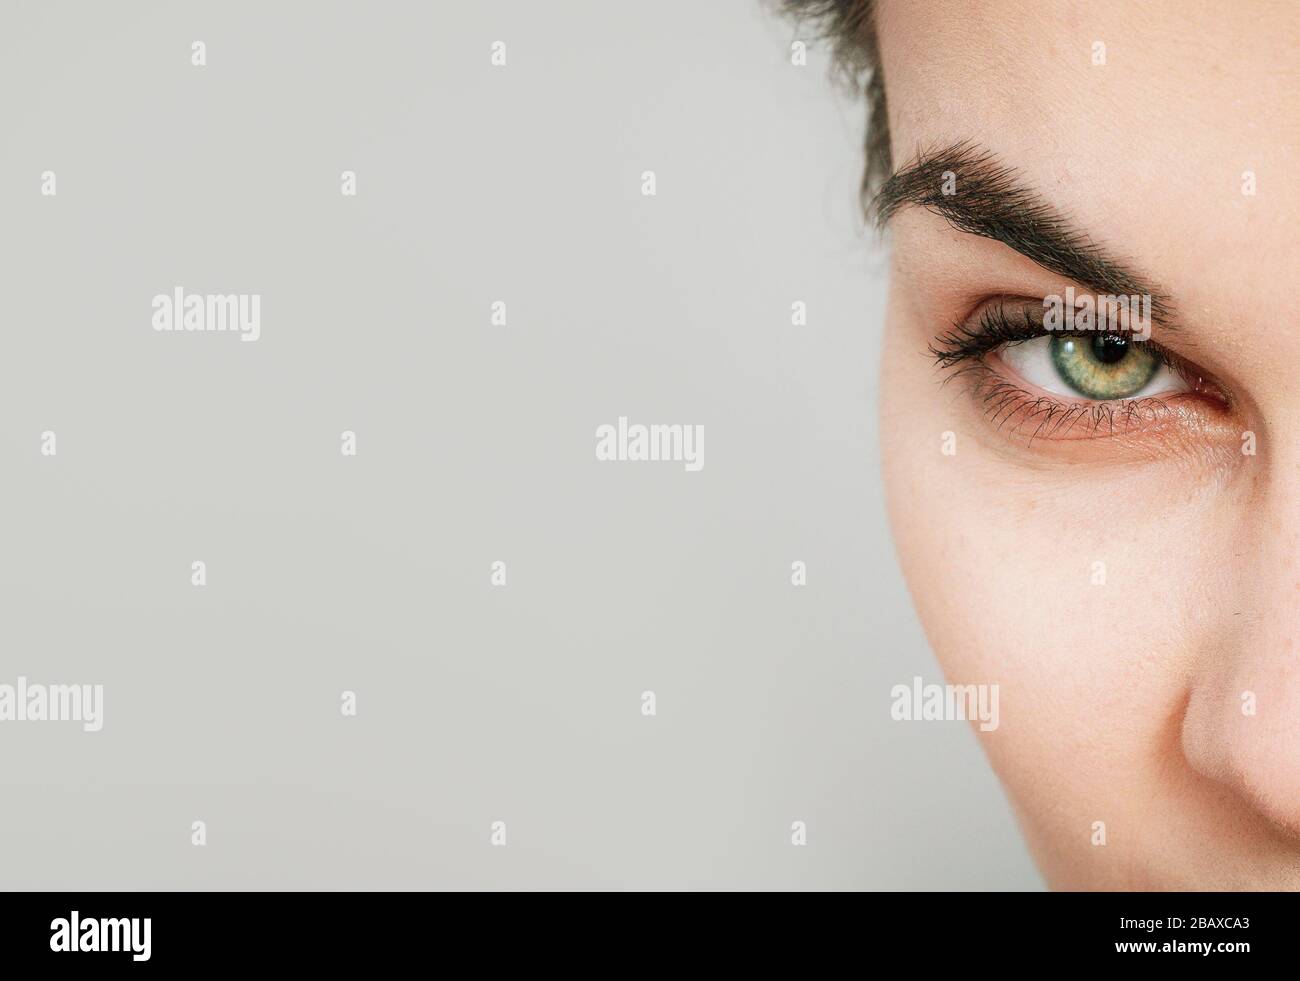 bellissimo occhio umano primo piano macro dettaglio shot Foto Stock